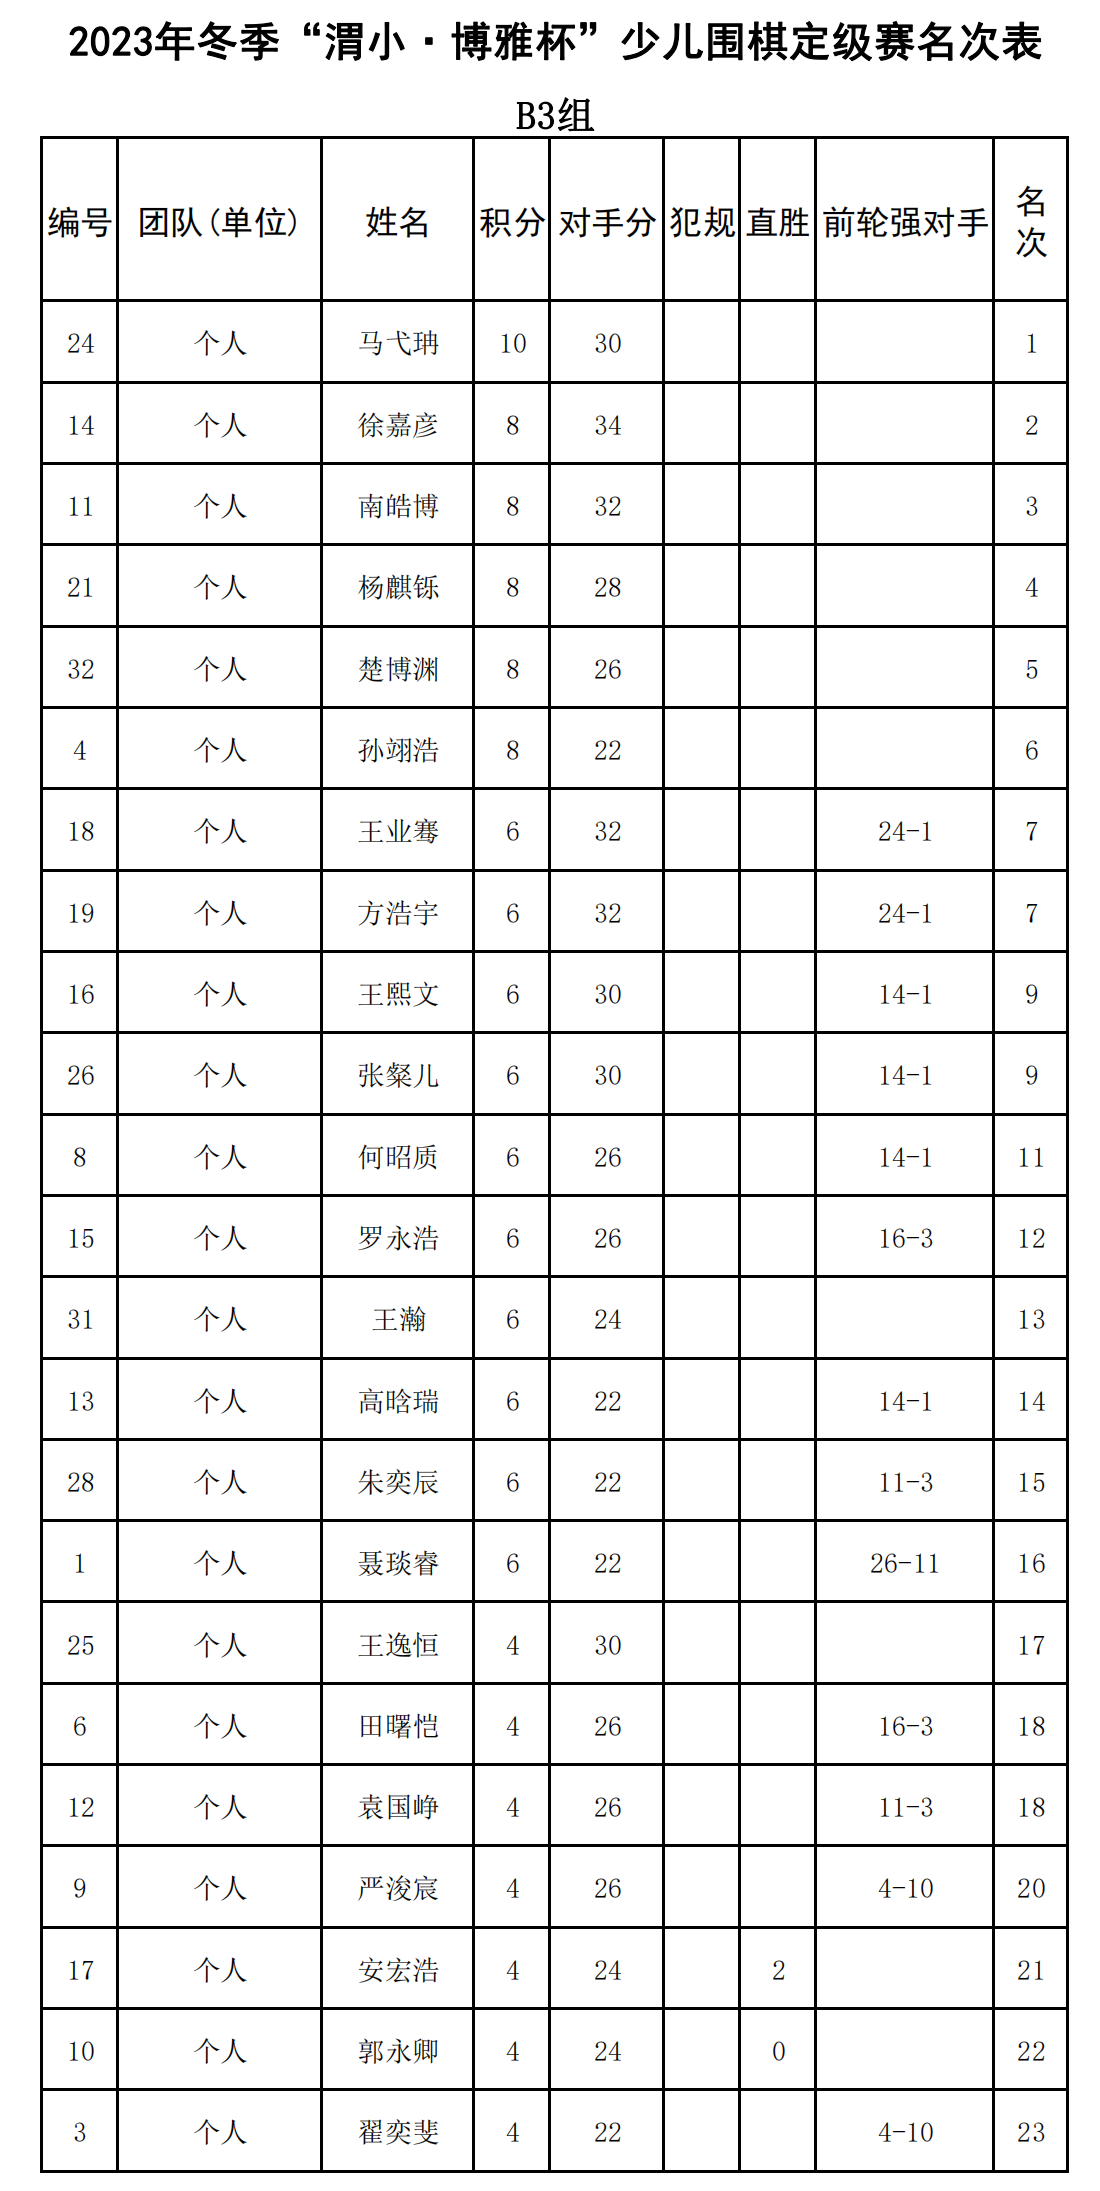 2023年冬季“渭小·博雅杯”少儿围棋定级赛B3组(名次表)_00.png